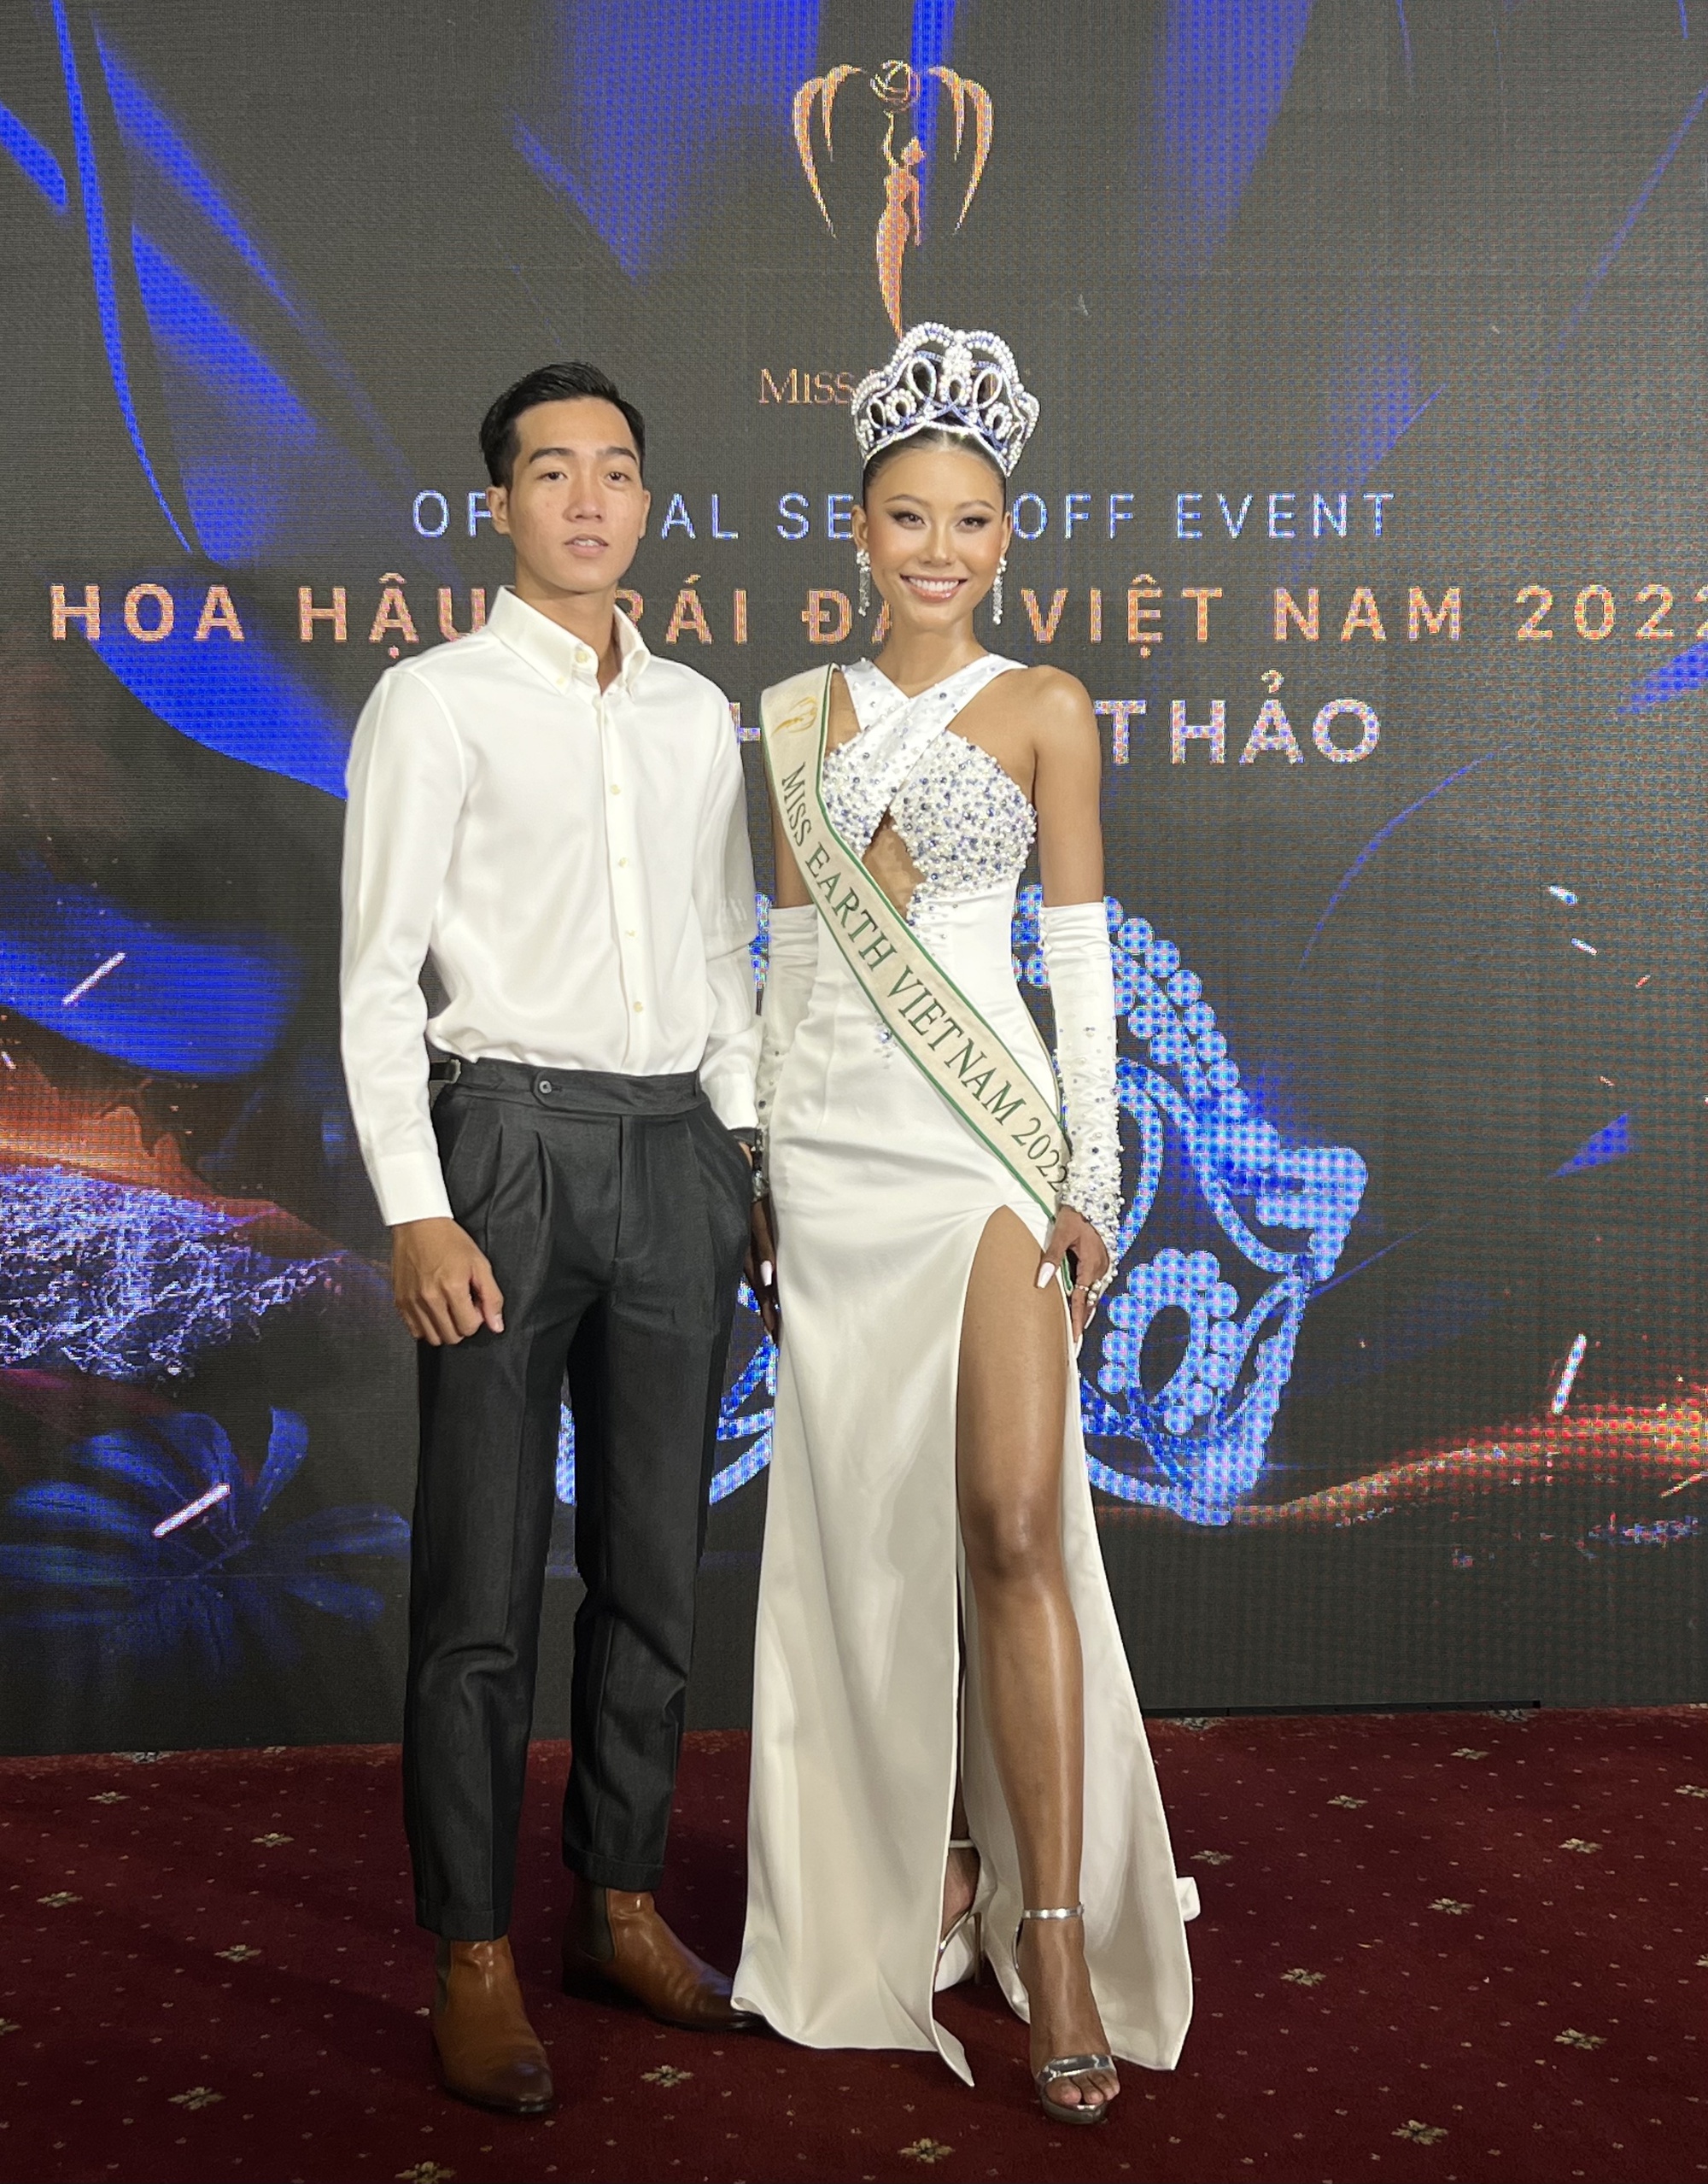 Trương Ngọc Ánh nói về việc Miss Earth tụt hạng sau 2 năm tổ chức online - Ảnh 2.